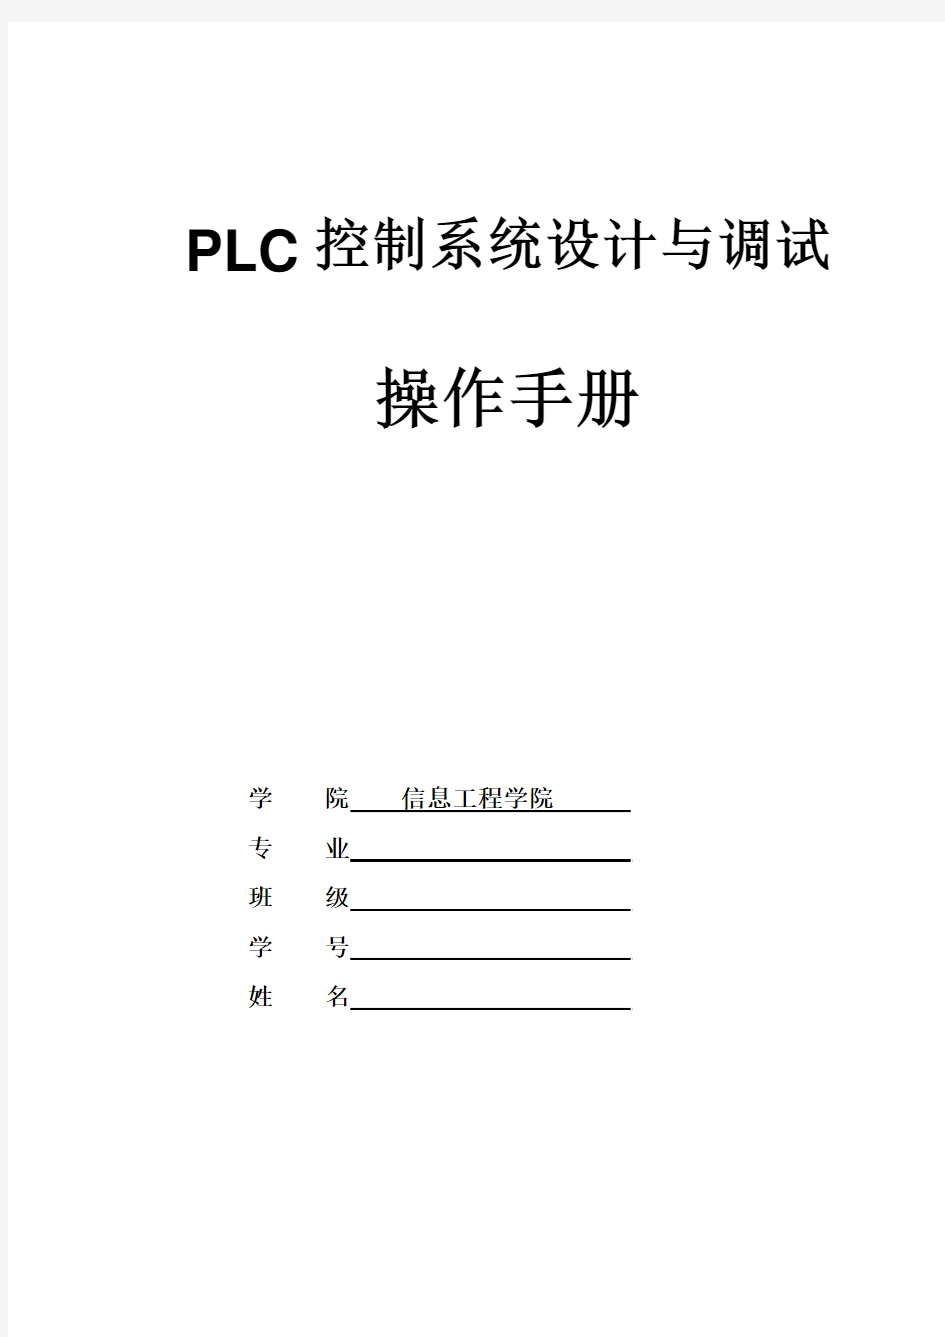 《PLC控制系统设计与装调》操作手册